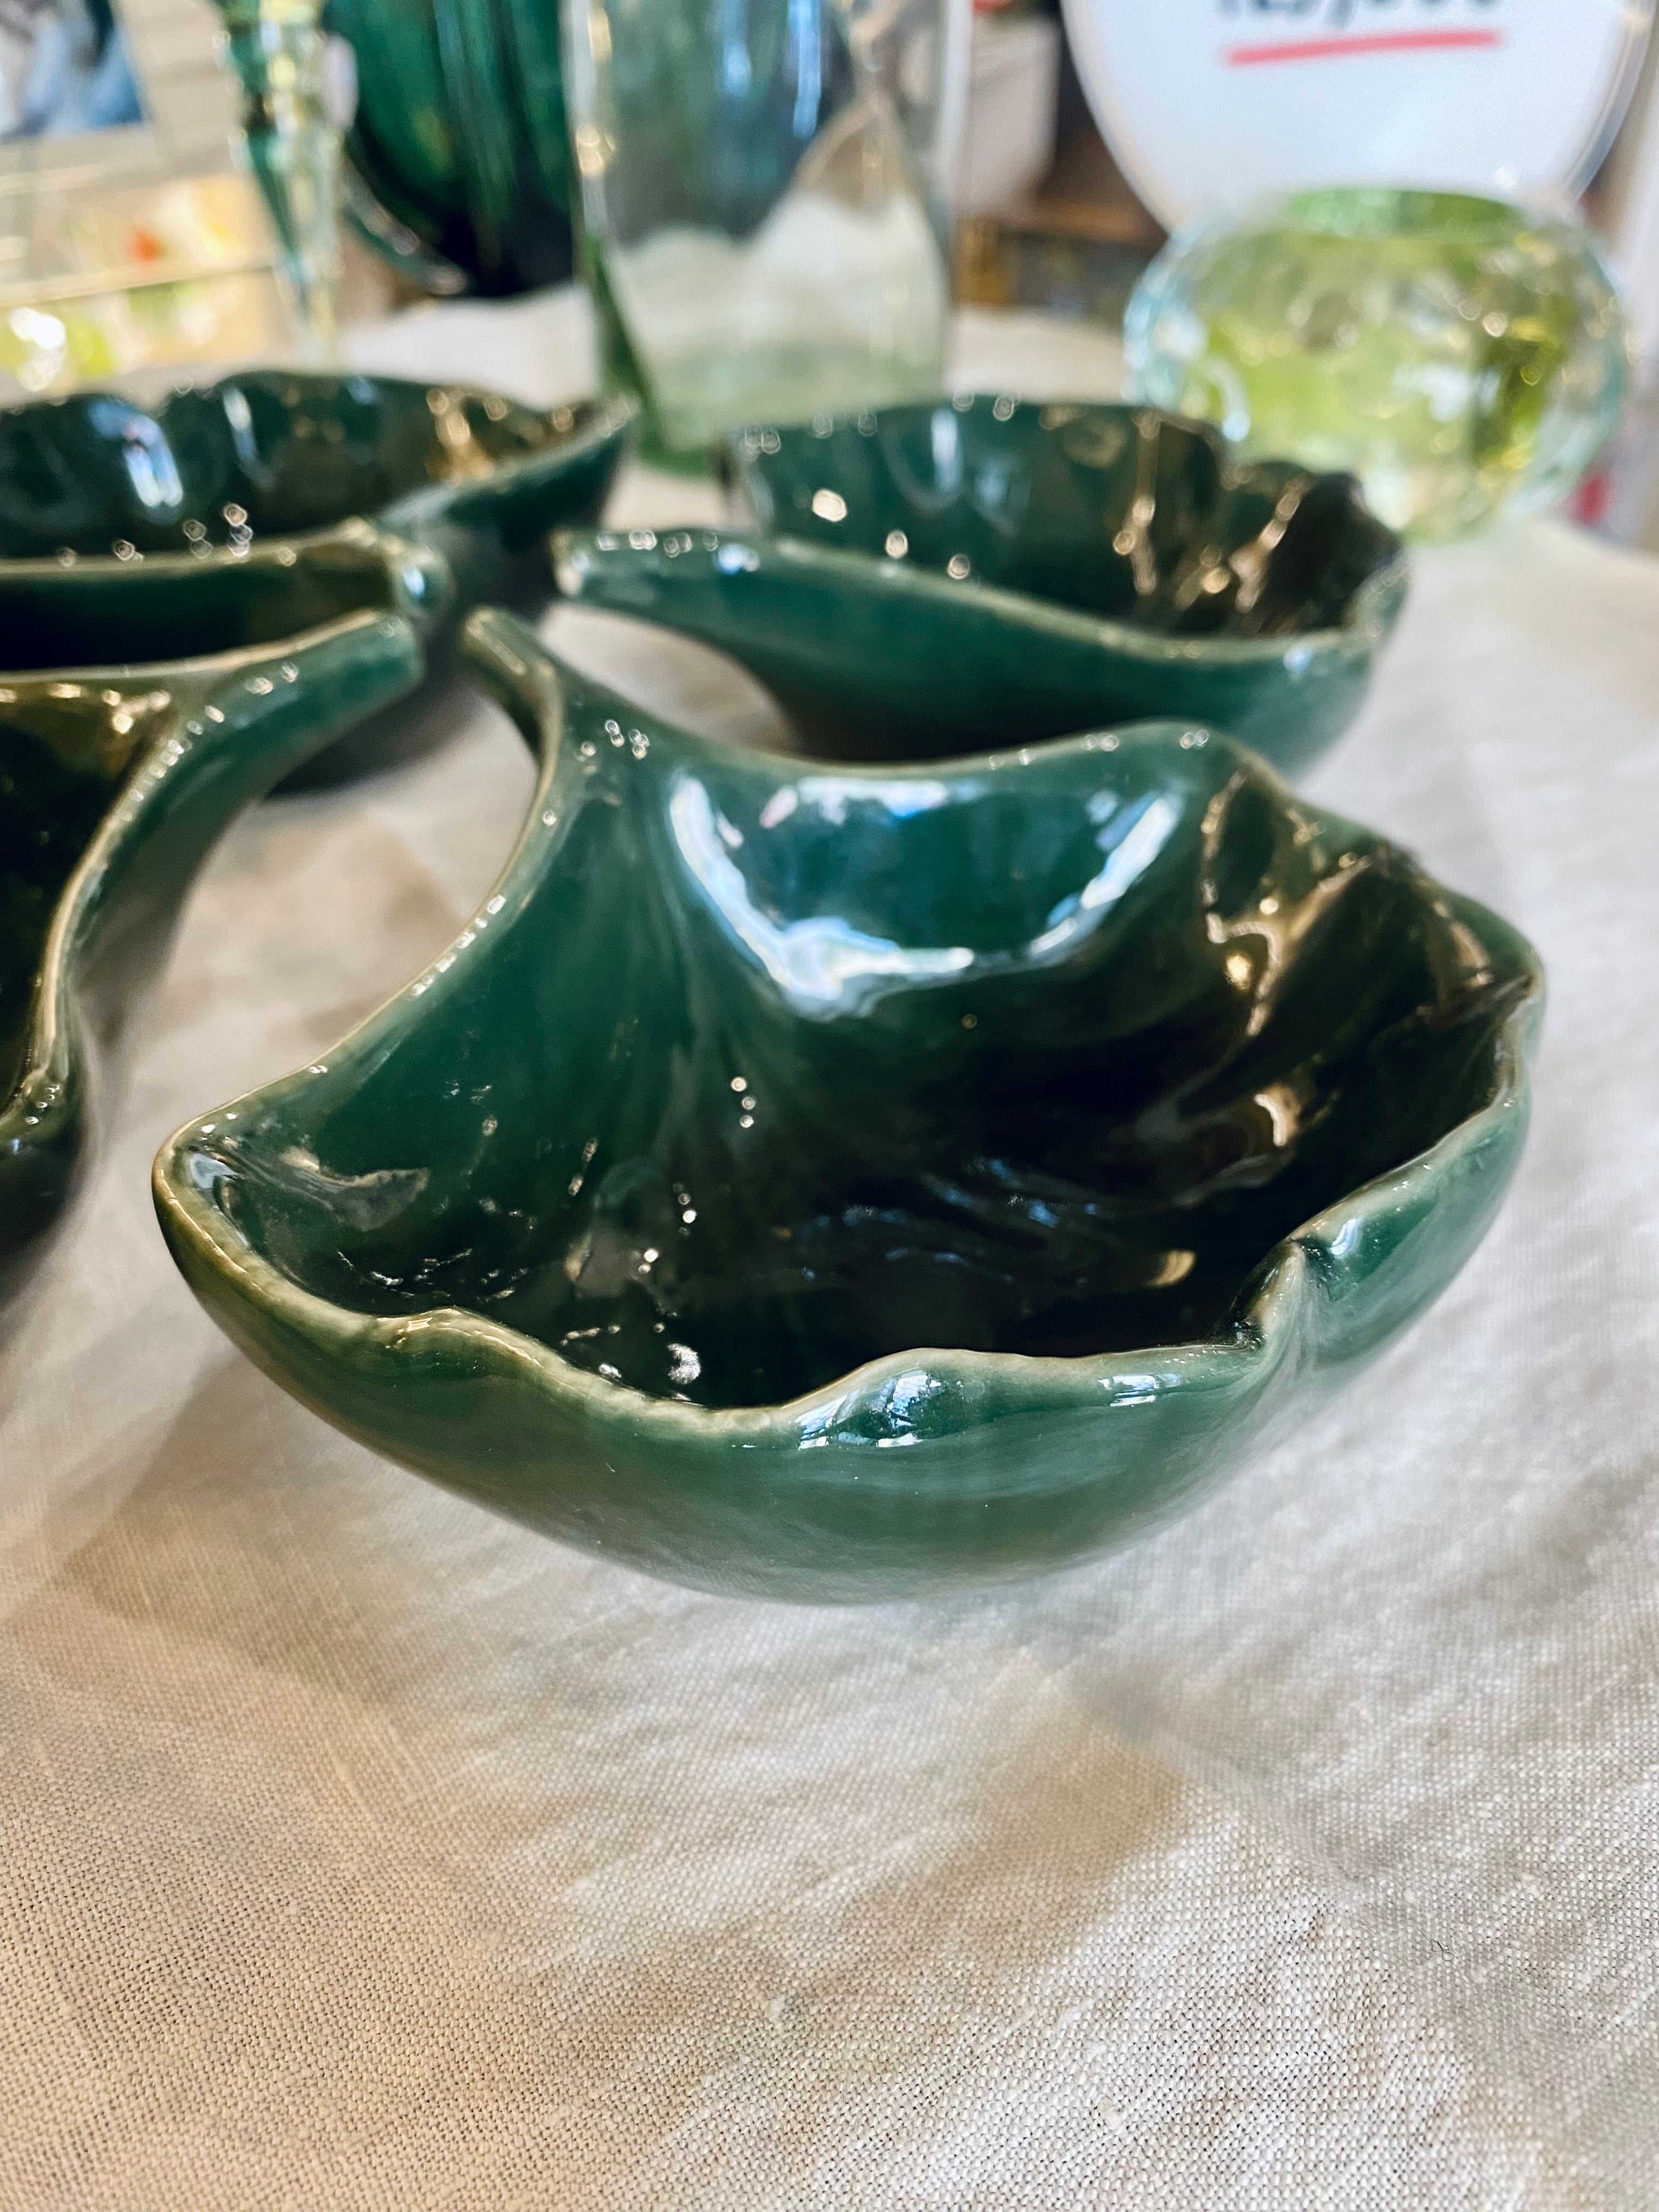 Foglia ciotolina - small bowl